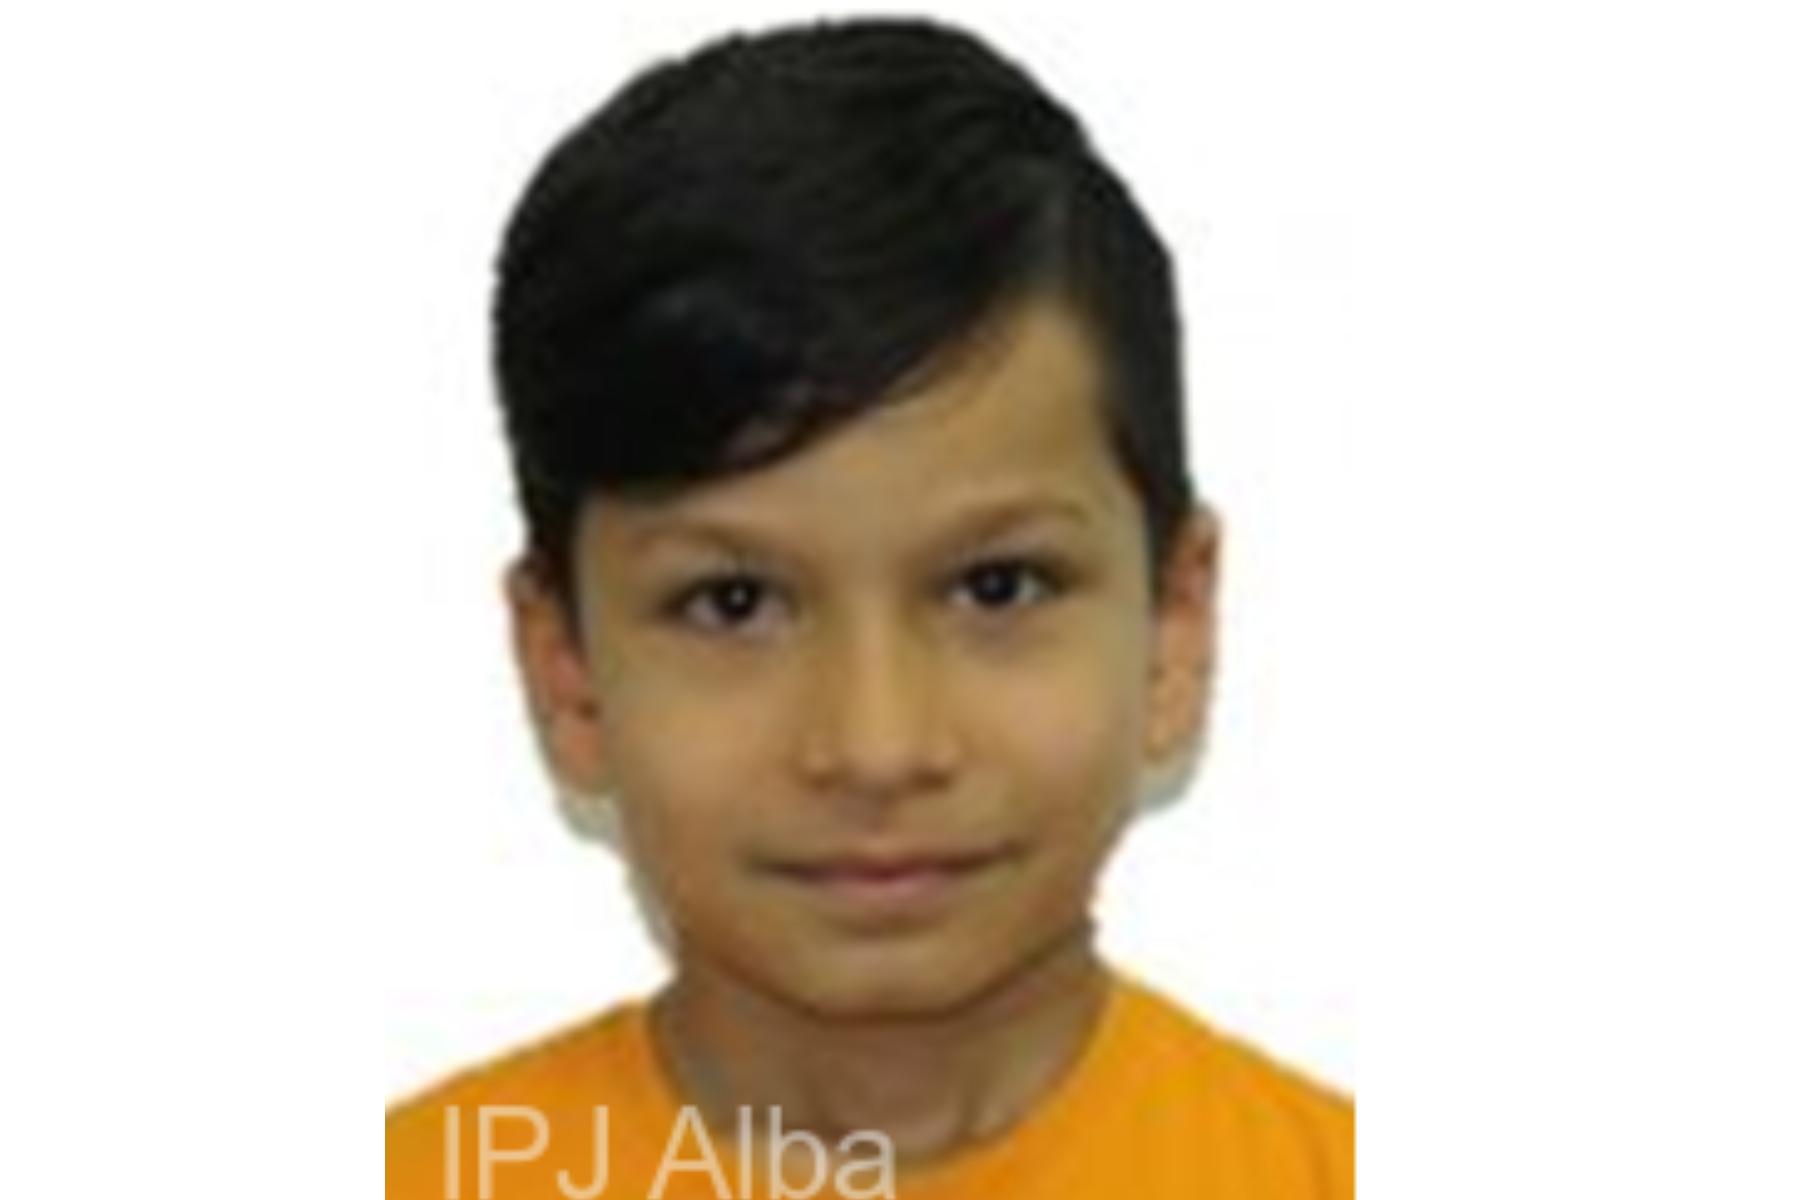 Un băiat de 10 ani, din Alba Iulia, a dispărut joi seară